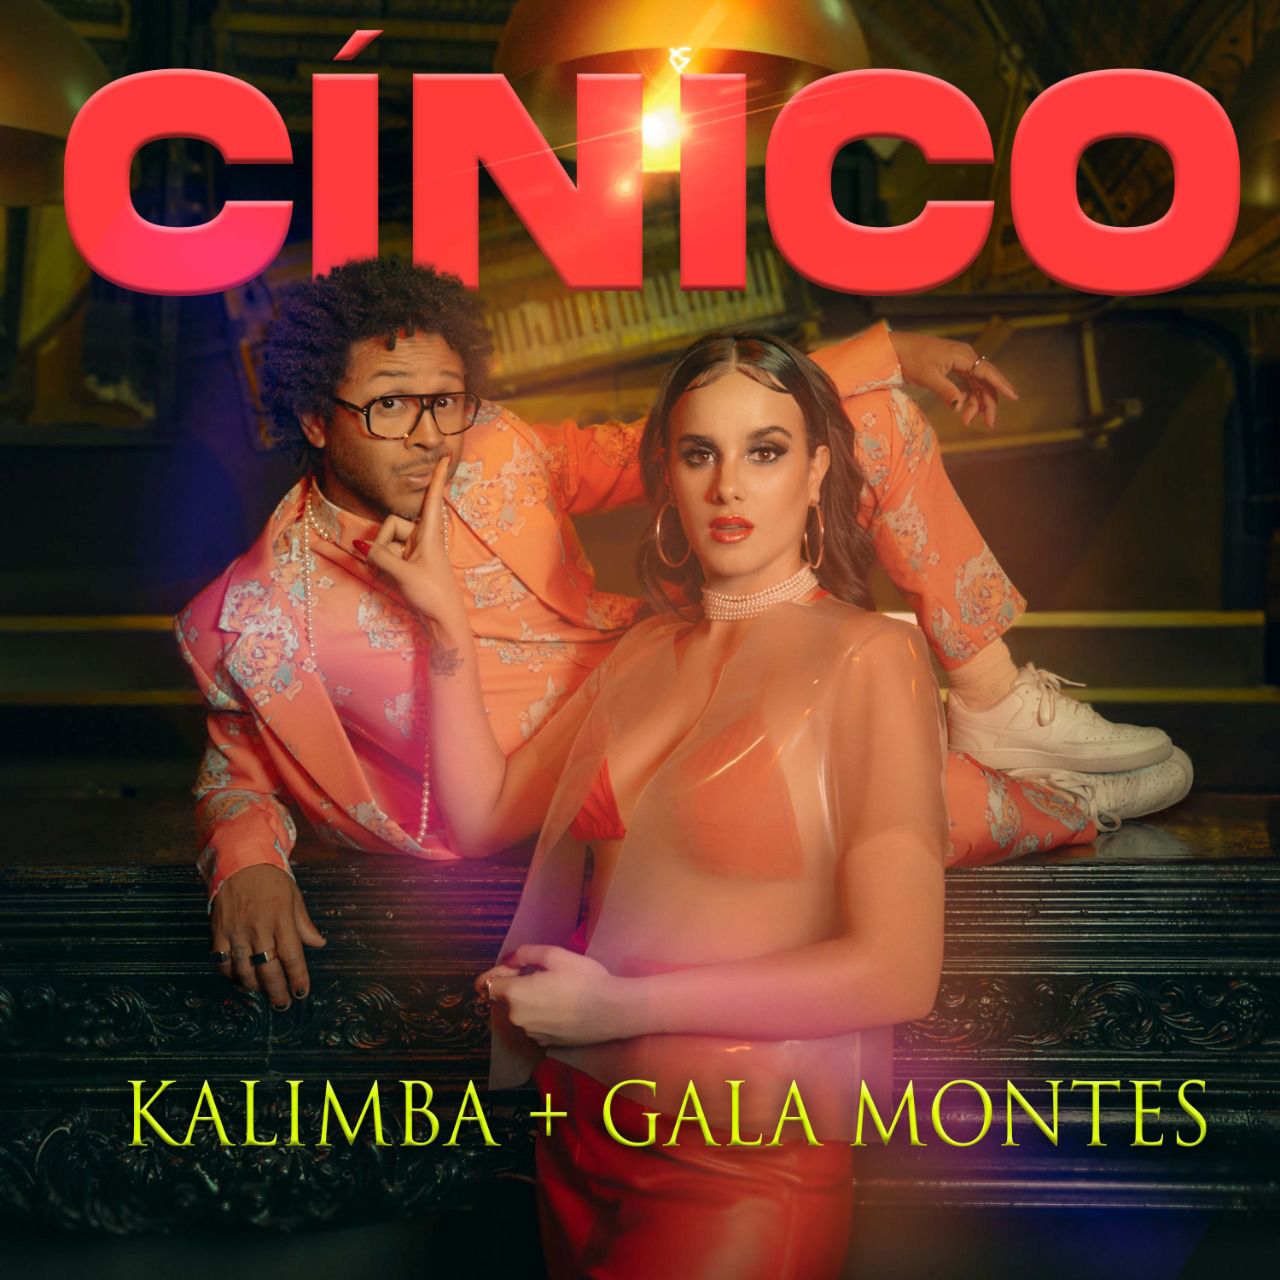 Los cantantes lanzaron el tema "Cínico", un cumbiatón con un mensaje ligero y de fiesta (Foto: Kalimba)